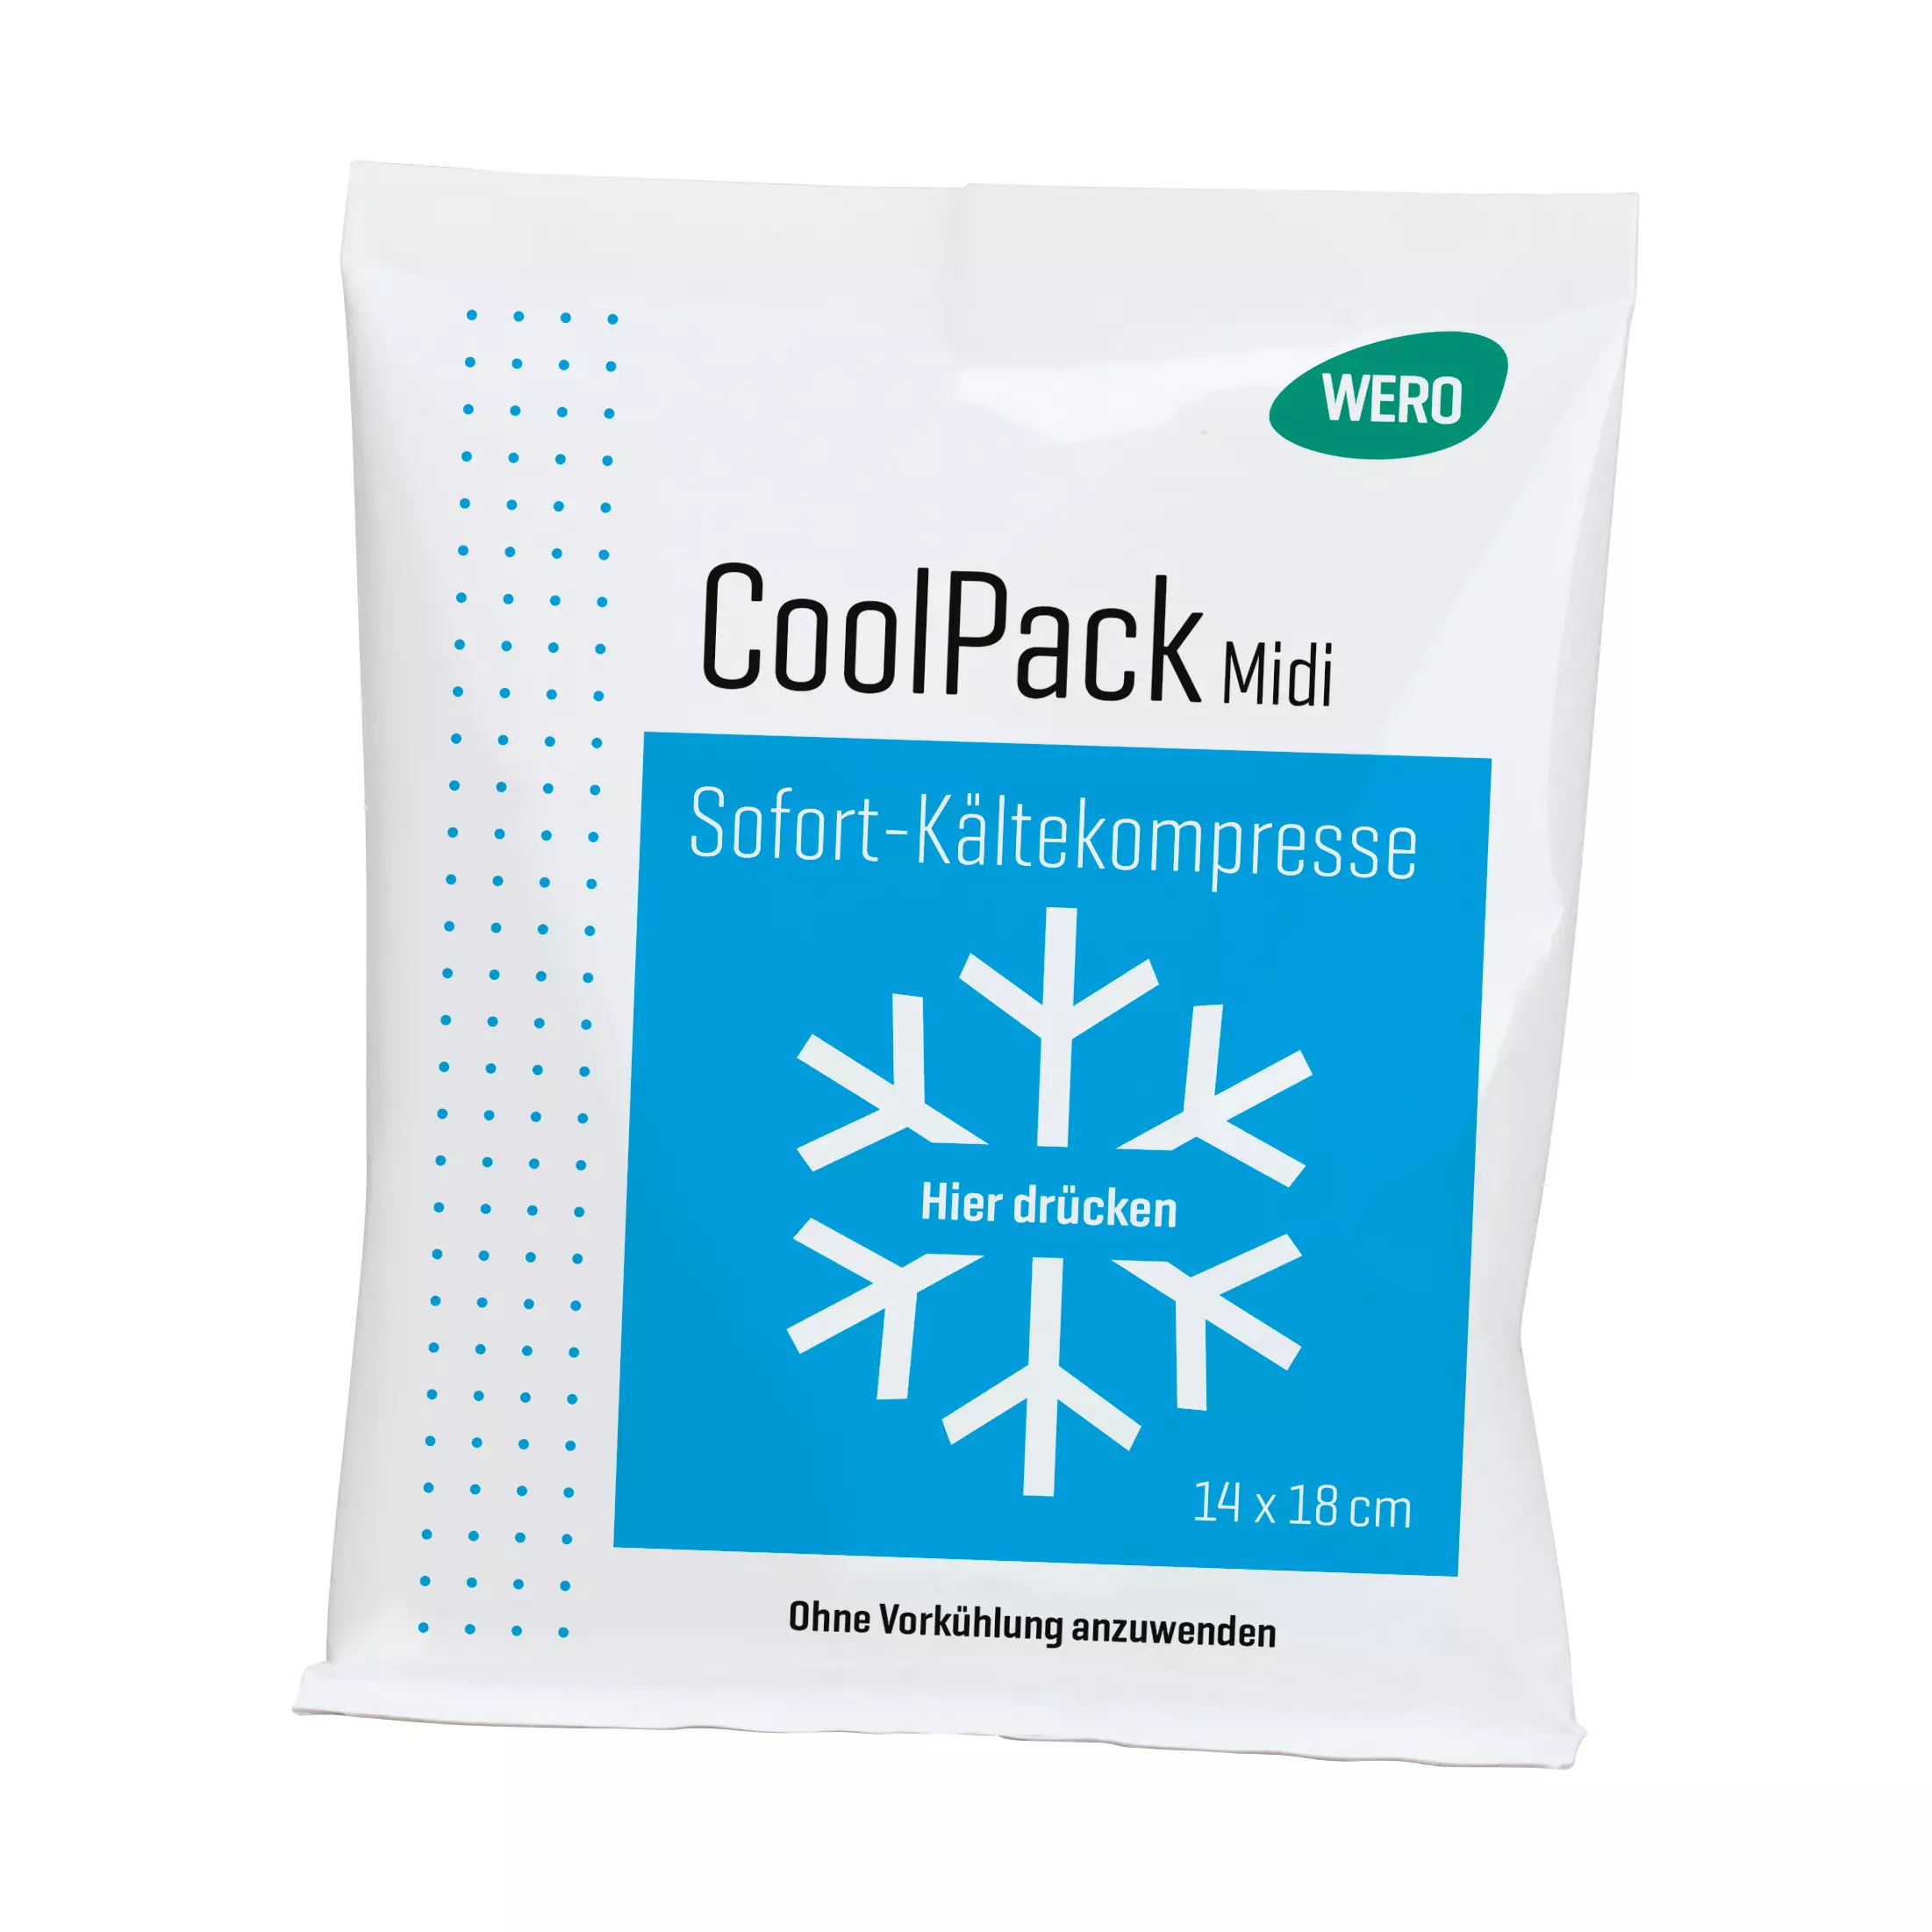 WERO CoolPack instant cold compress - Midi, 1 pc